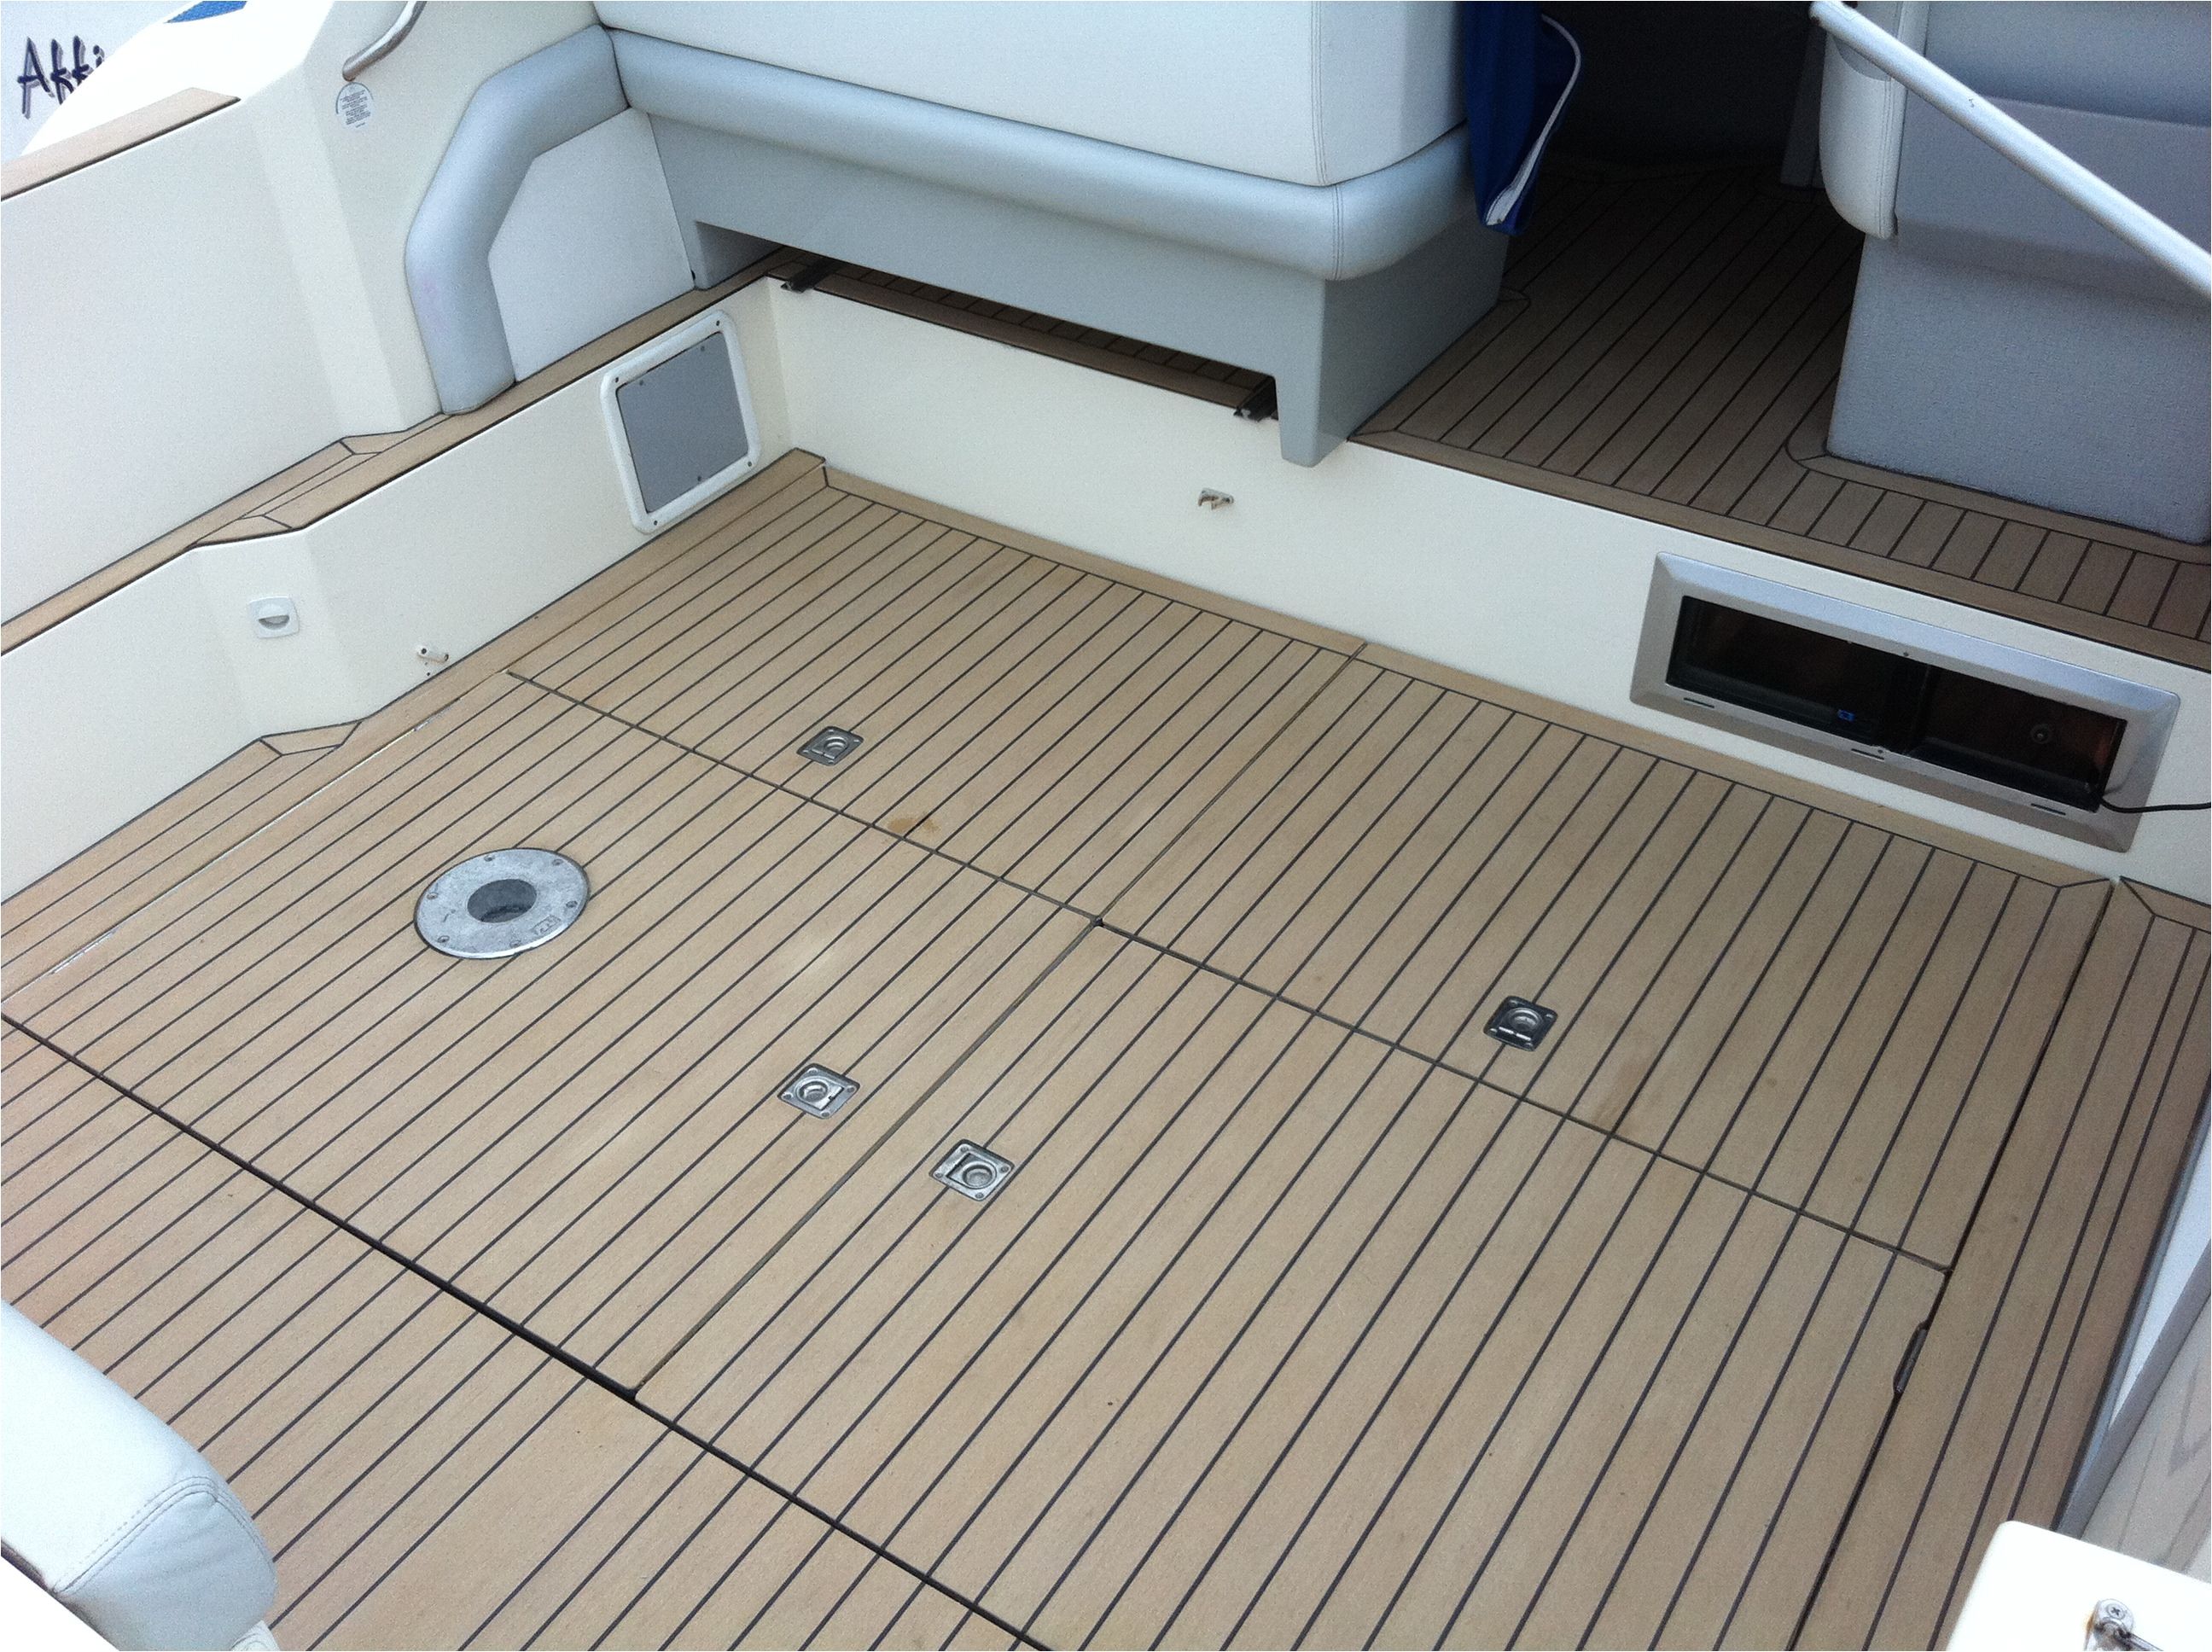 vinyl flooring for boats manufacturers canada teak boat deck pinterest boating teak and decking